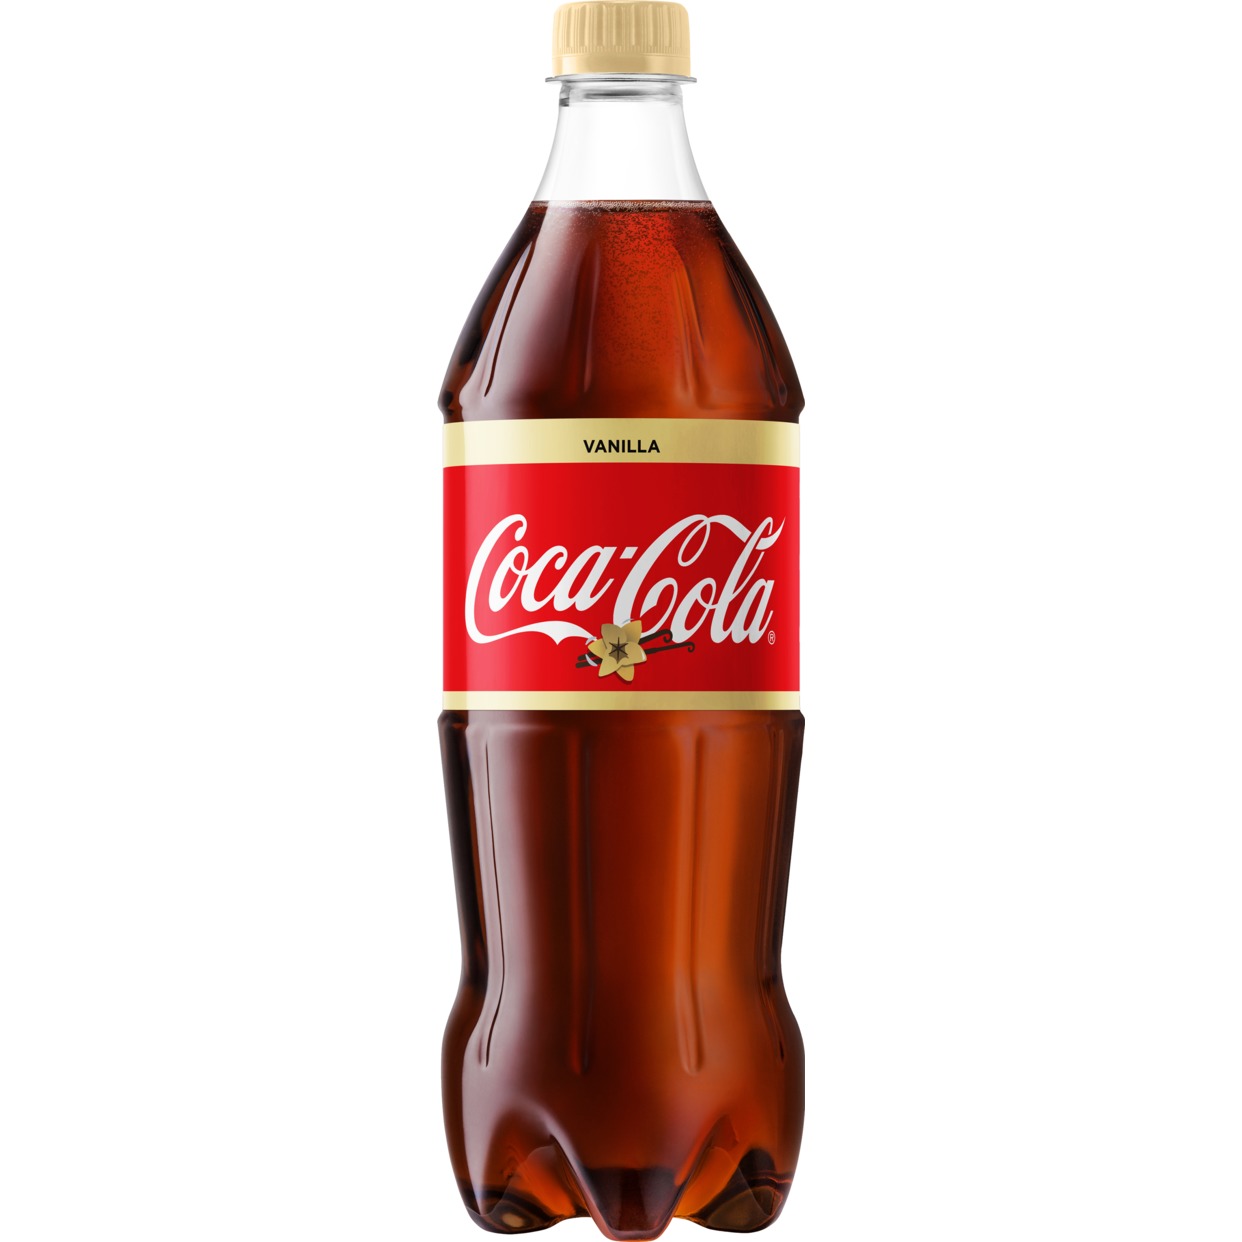 «Кока-Кола Ванилла ®» напиток безалкогольный сильногазированный, 0.9л по акции в Пятерочке